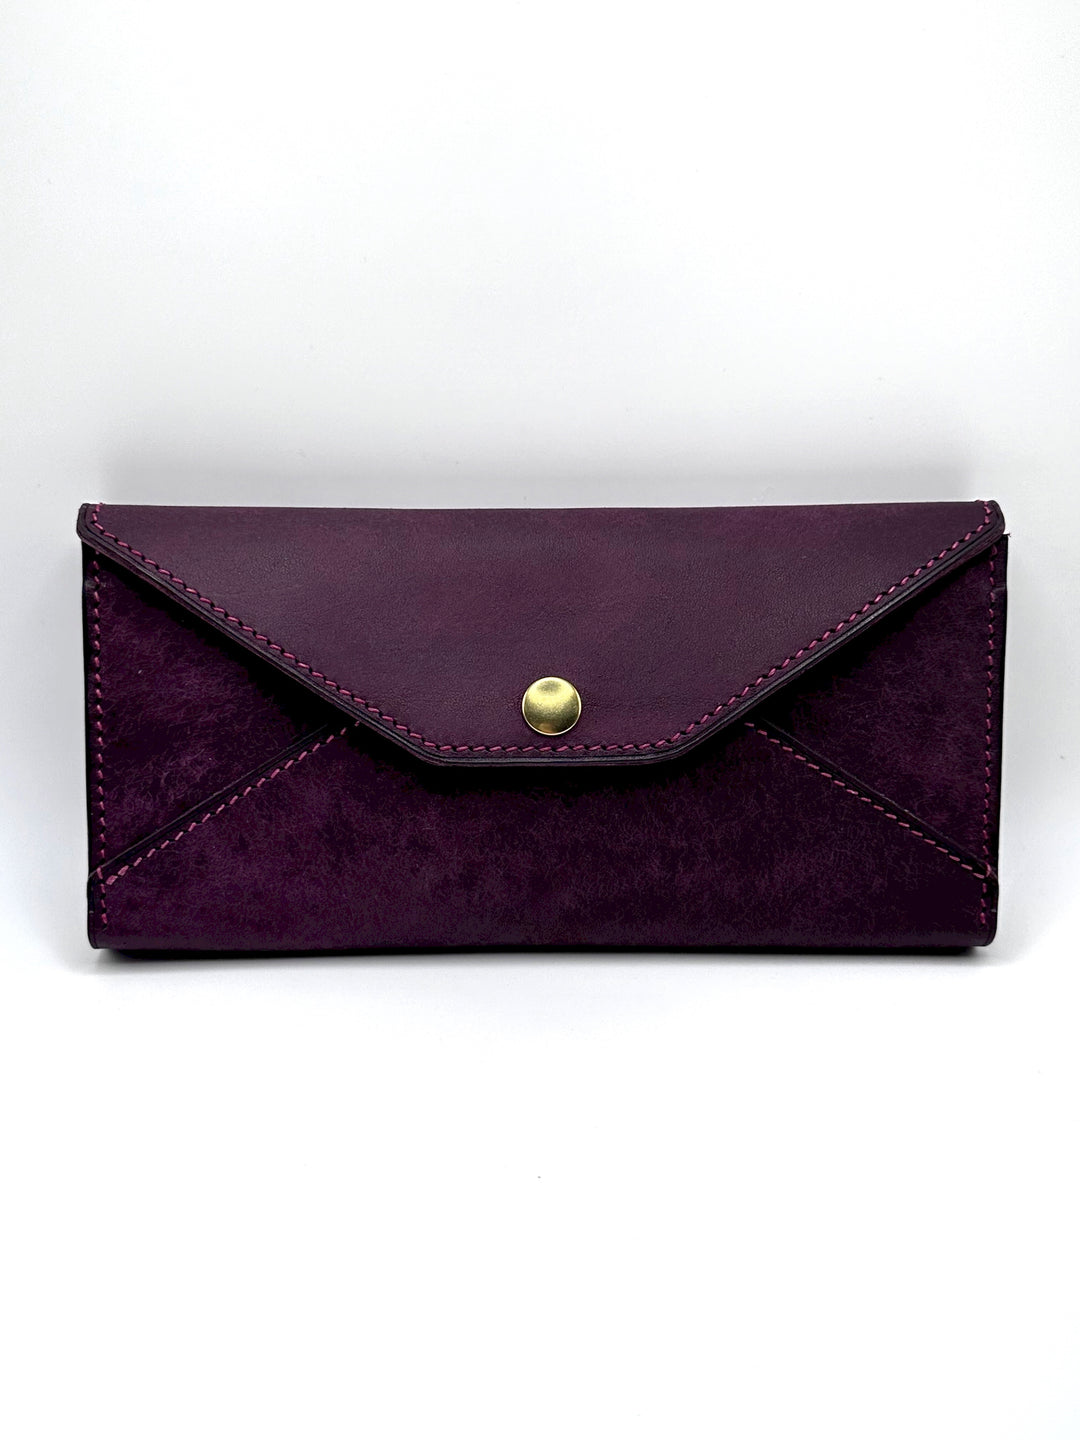 Wallet "Purple"